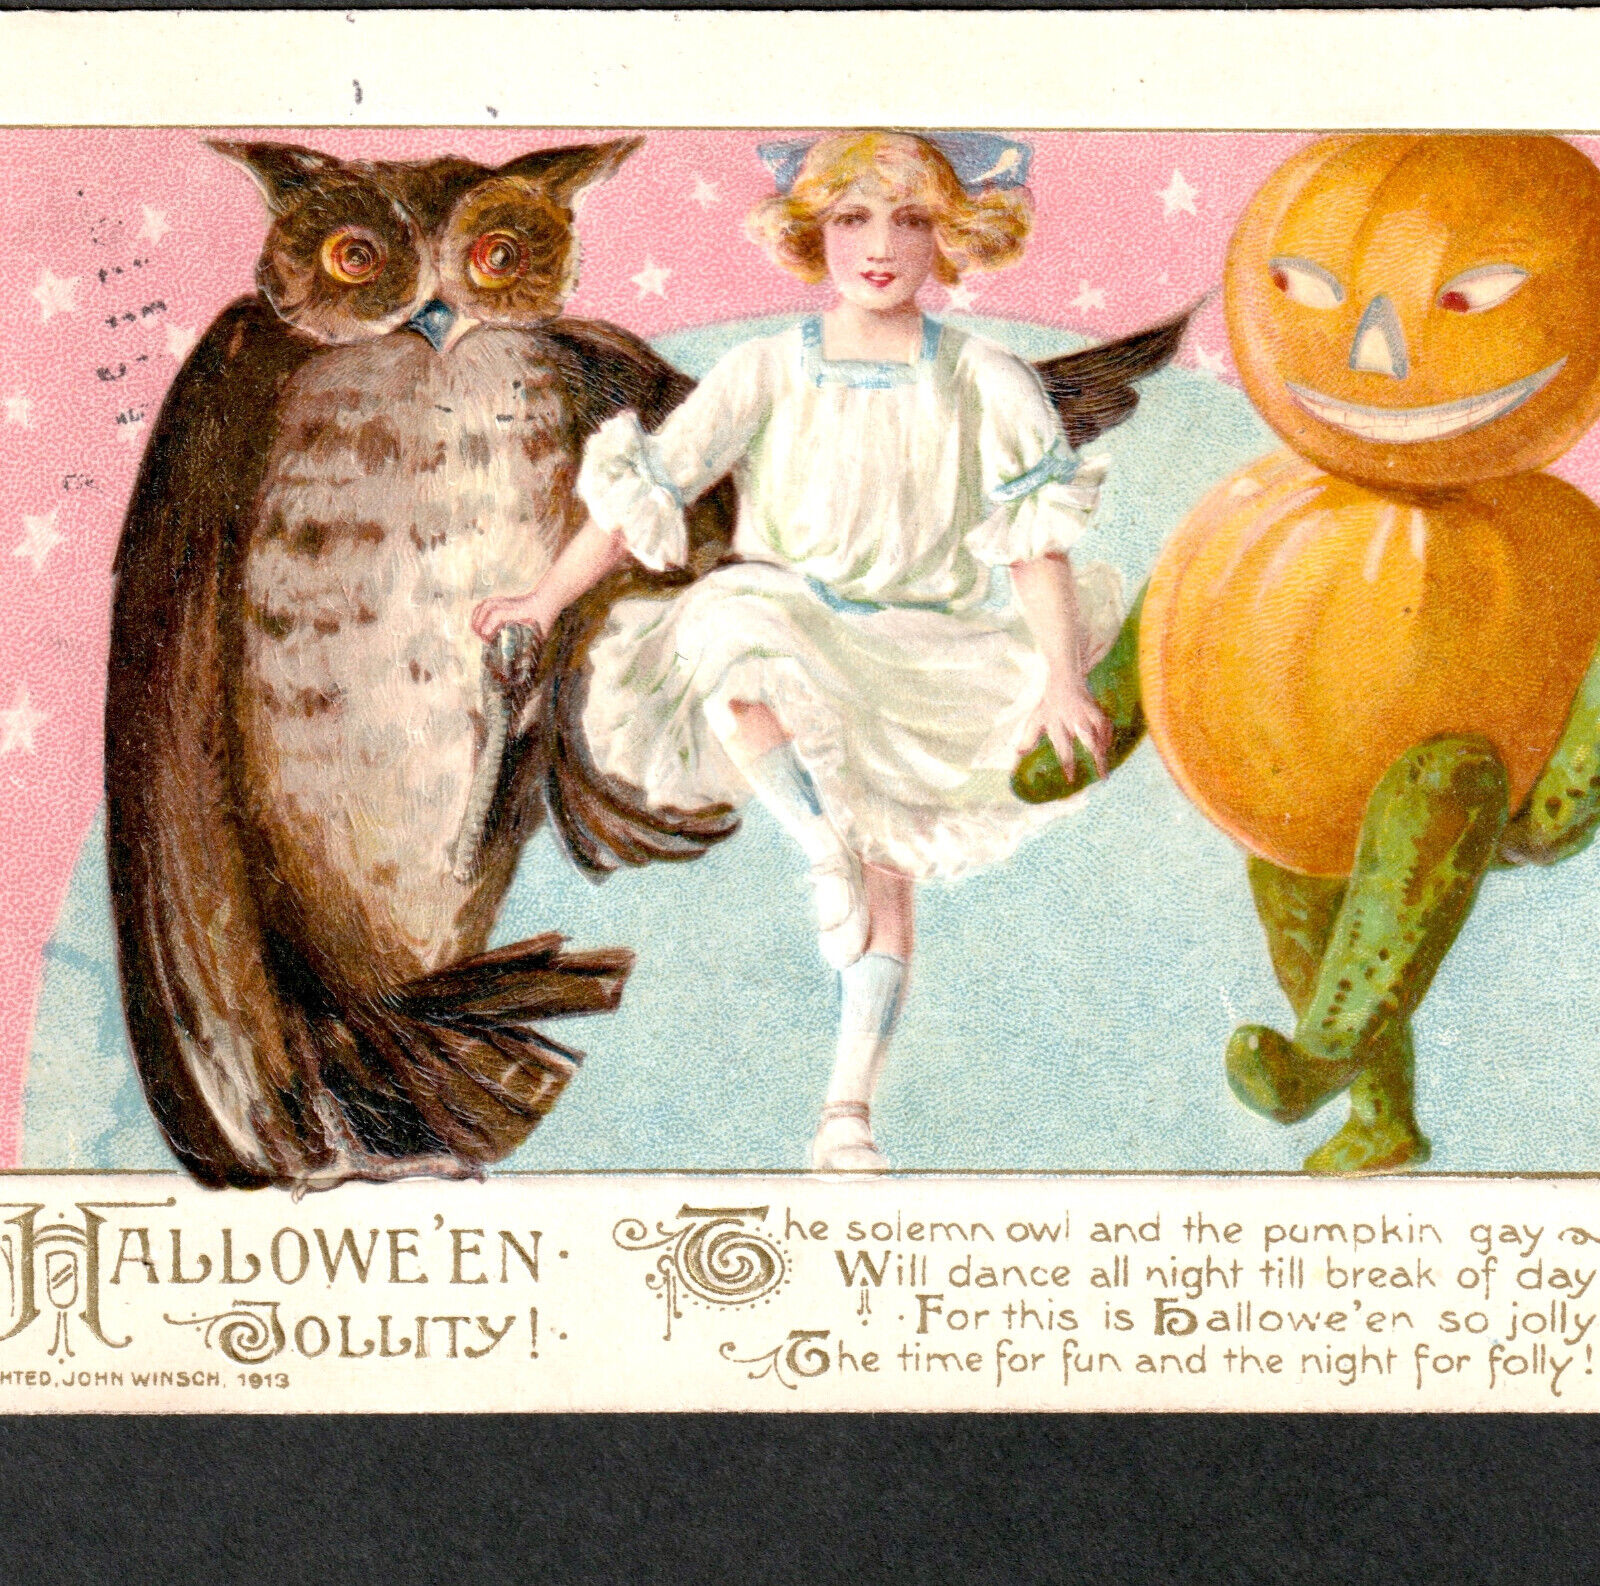 Winsch Schmucker 1913 Halloween Jollity 3847 Pumpkin Gay Dance Owl Girl PostCard